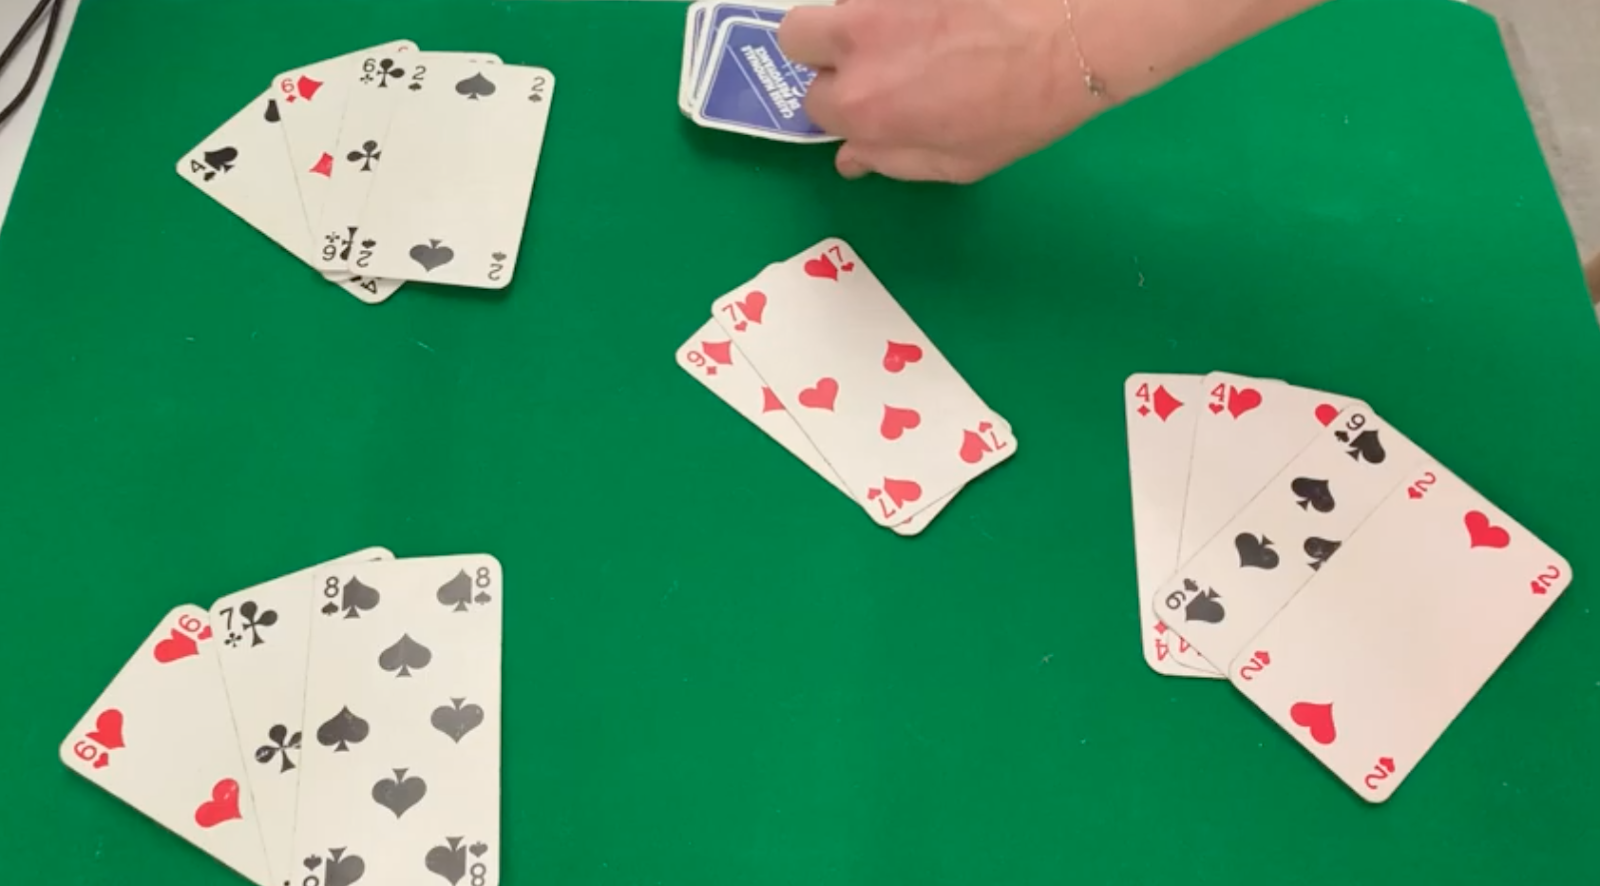 Calcul mental : un simple jeu de cartes suffit pour s'exercer en s'amusant  ! 